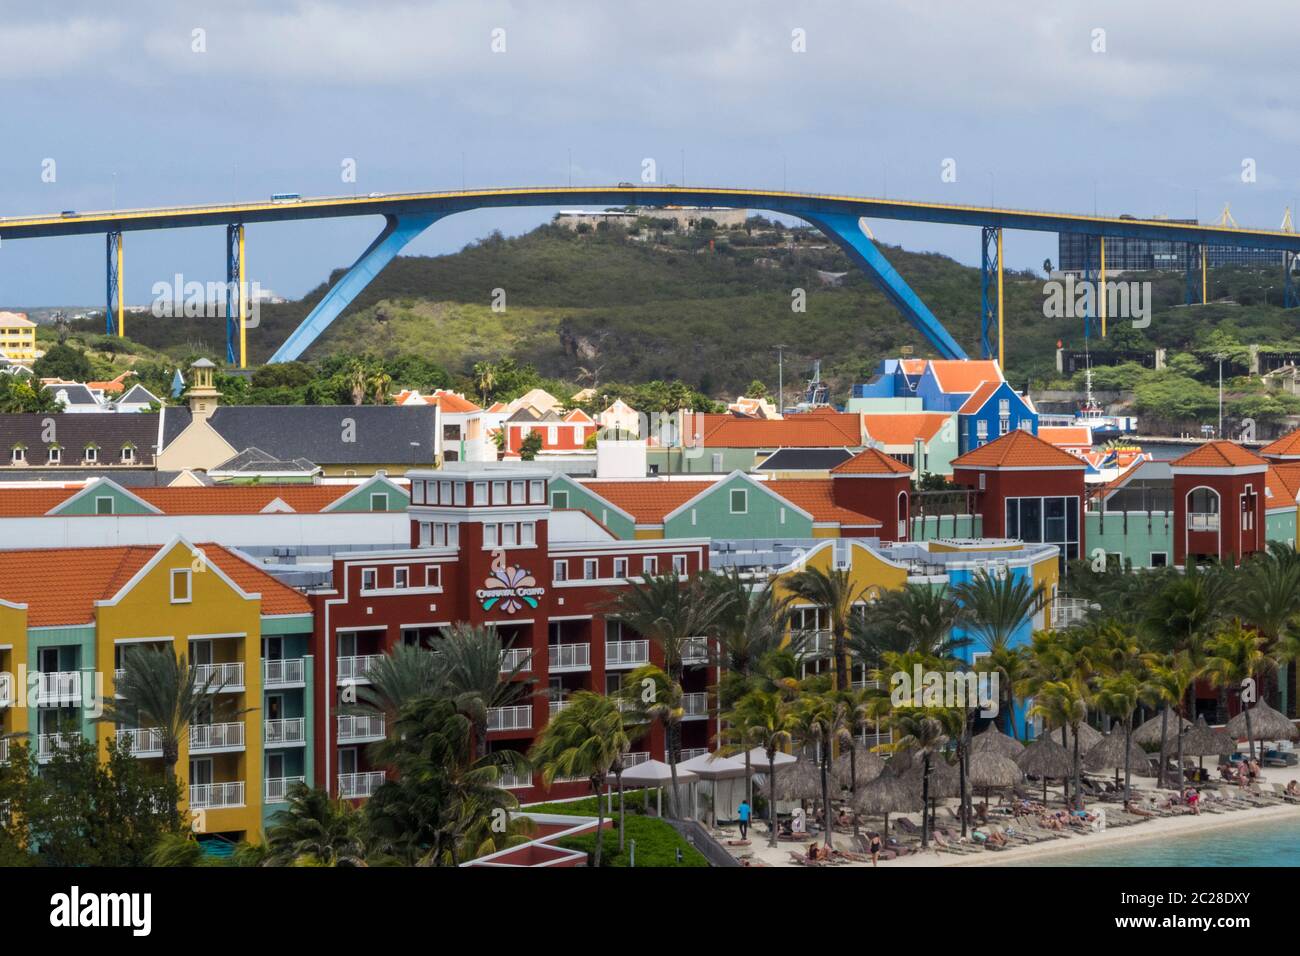 Mer des Caraïbes - Curaçao, Willemstad sur les îles ABC Banque D'Images